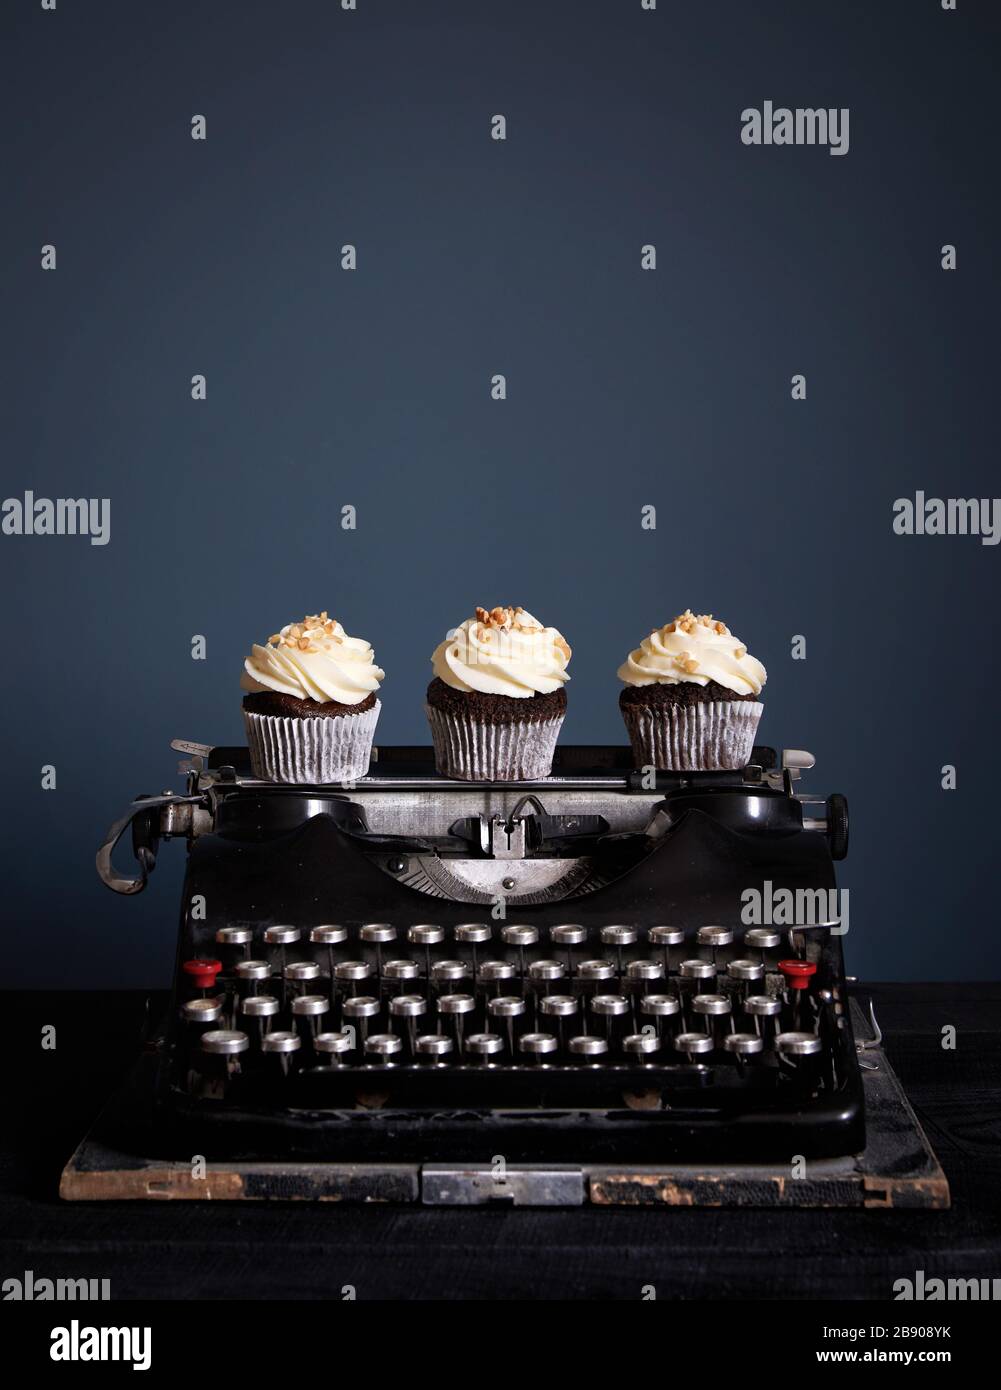 Cupcake al cioccolato decorati con crema bianca in piedi su vecchia macchina da scrivere vintage su sfondo scuro. Spazio libero per il testo Foto Stock